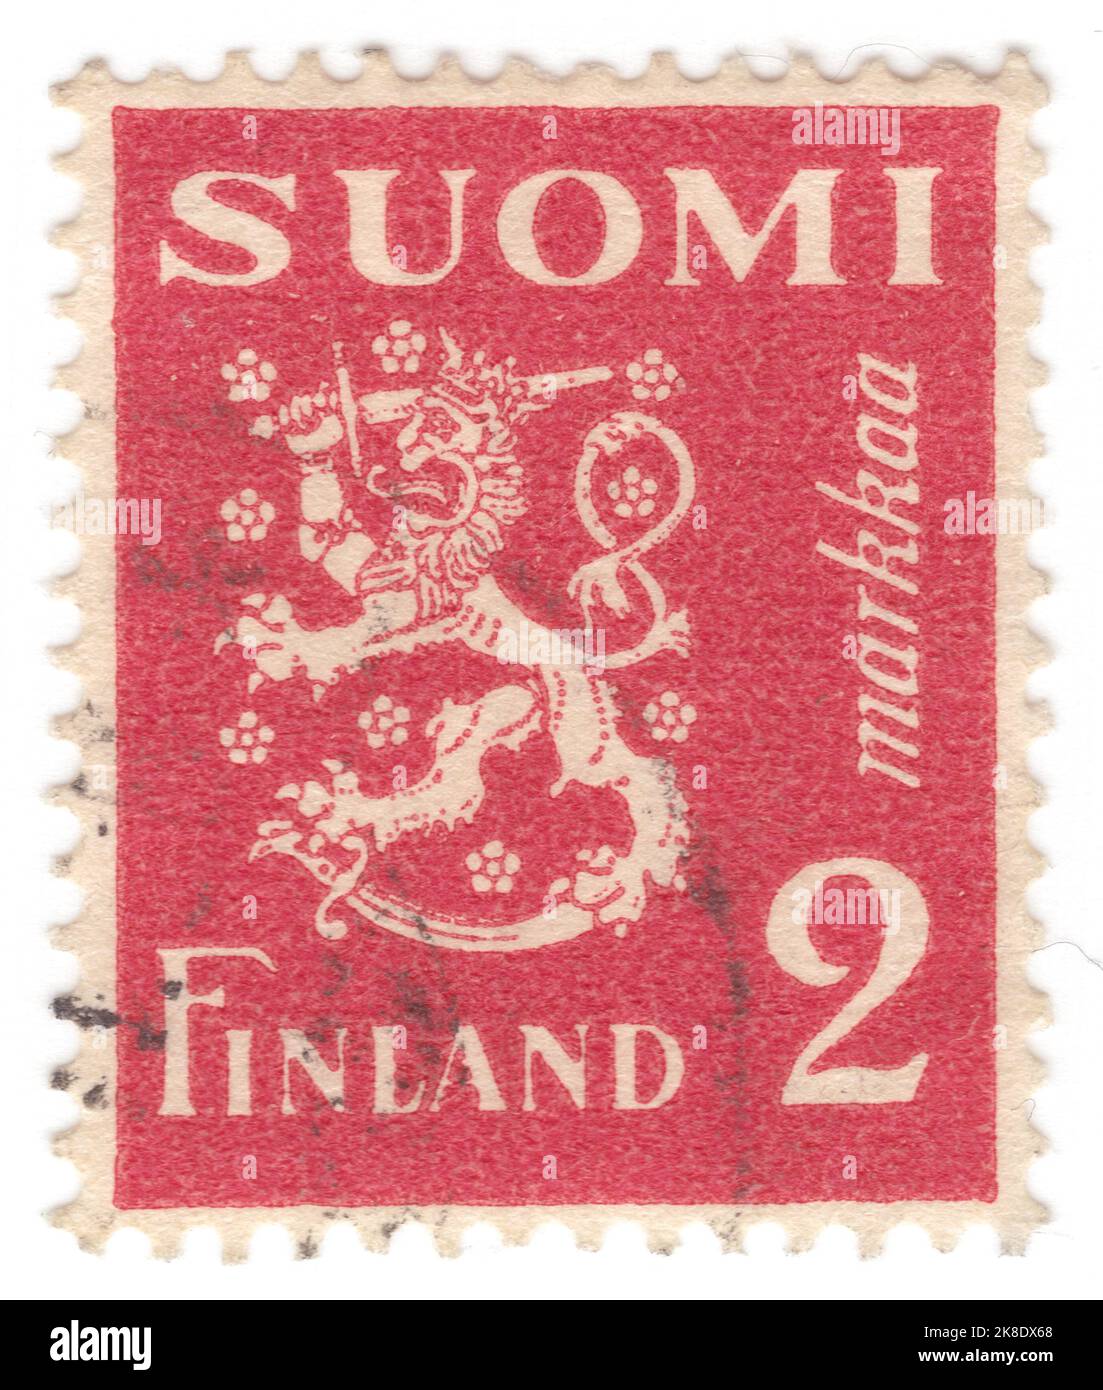 FINNLAND - 1936: Eine 2 Mark Briefmarke mit finnischen Wappensymbolen: Gekrönter Löwe, Schwert, Säbel und stilisierte Blumen Stockfoto